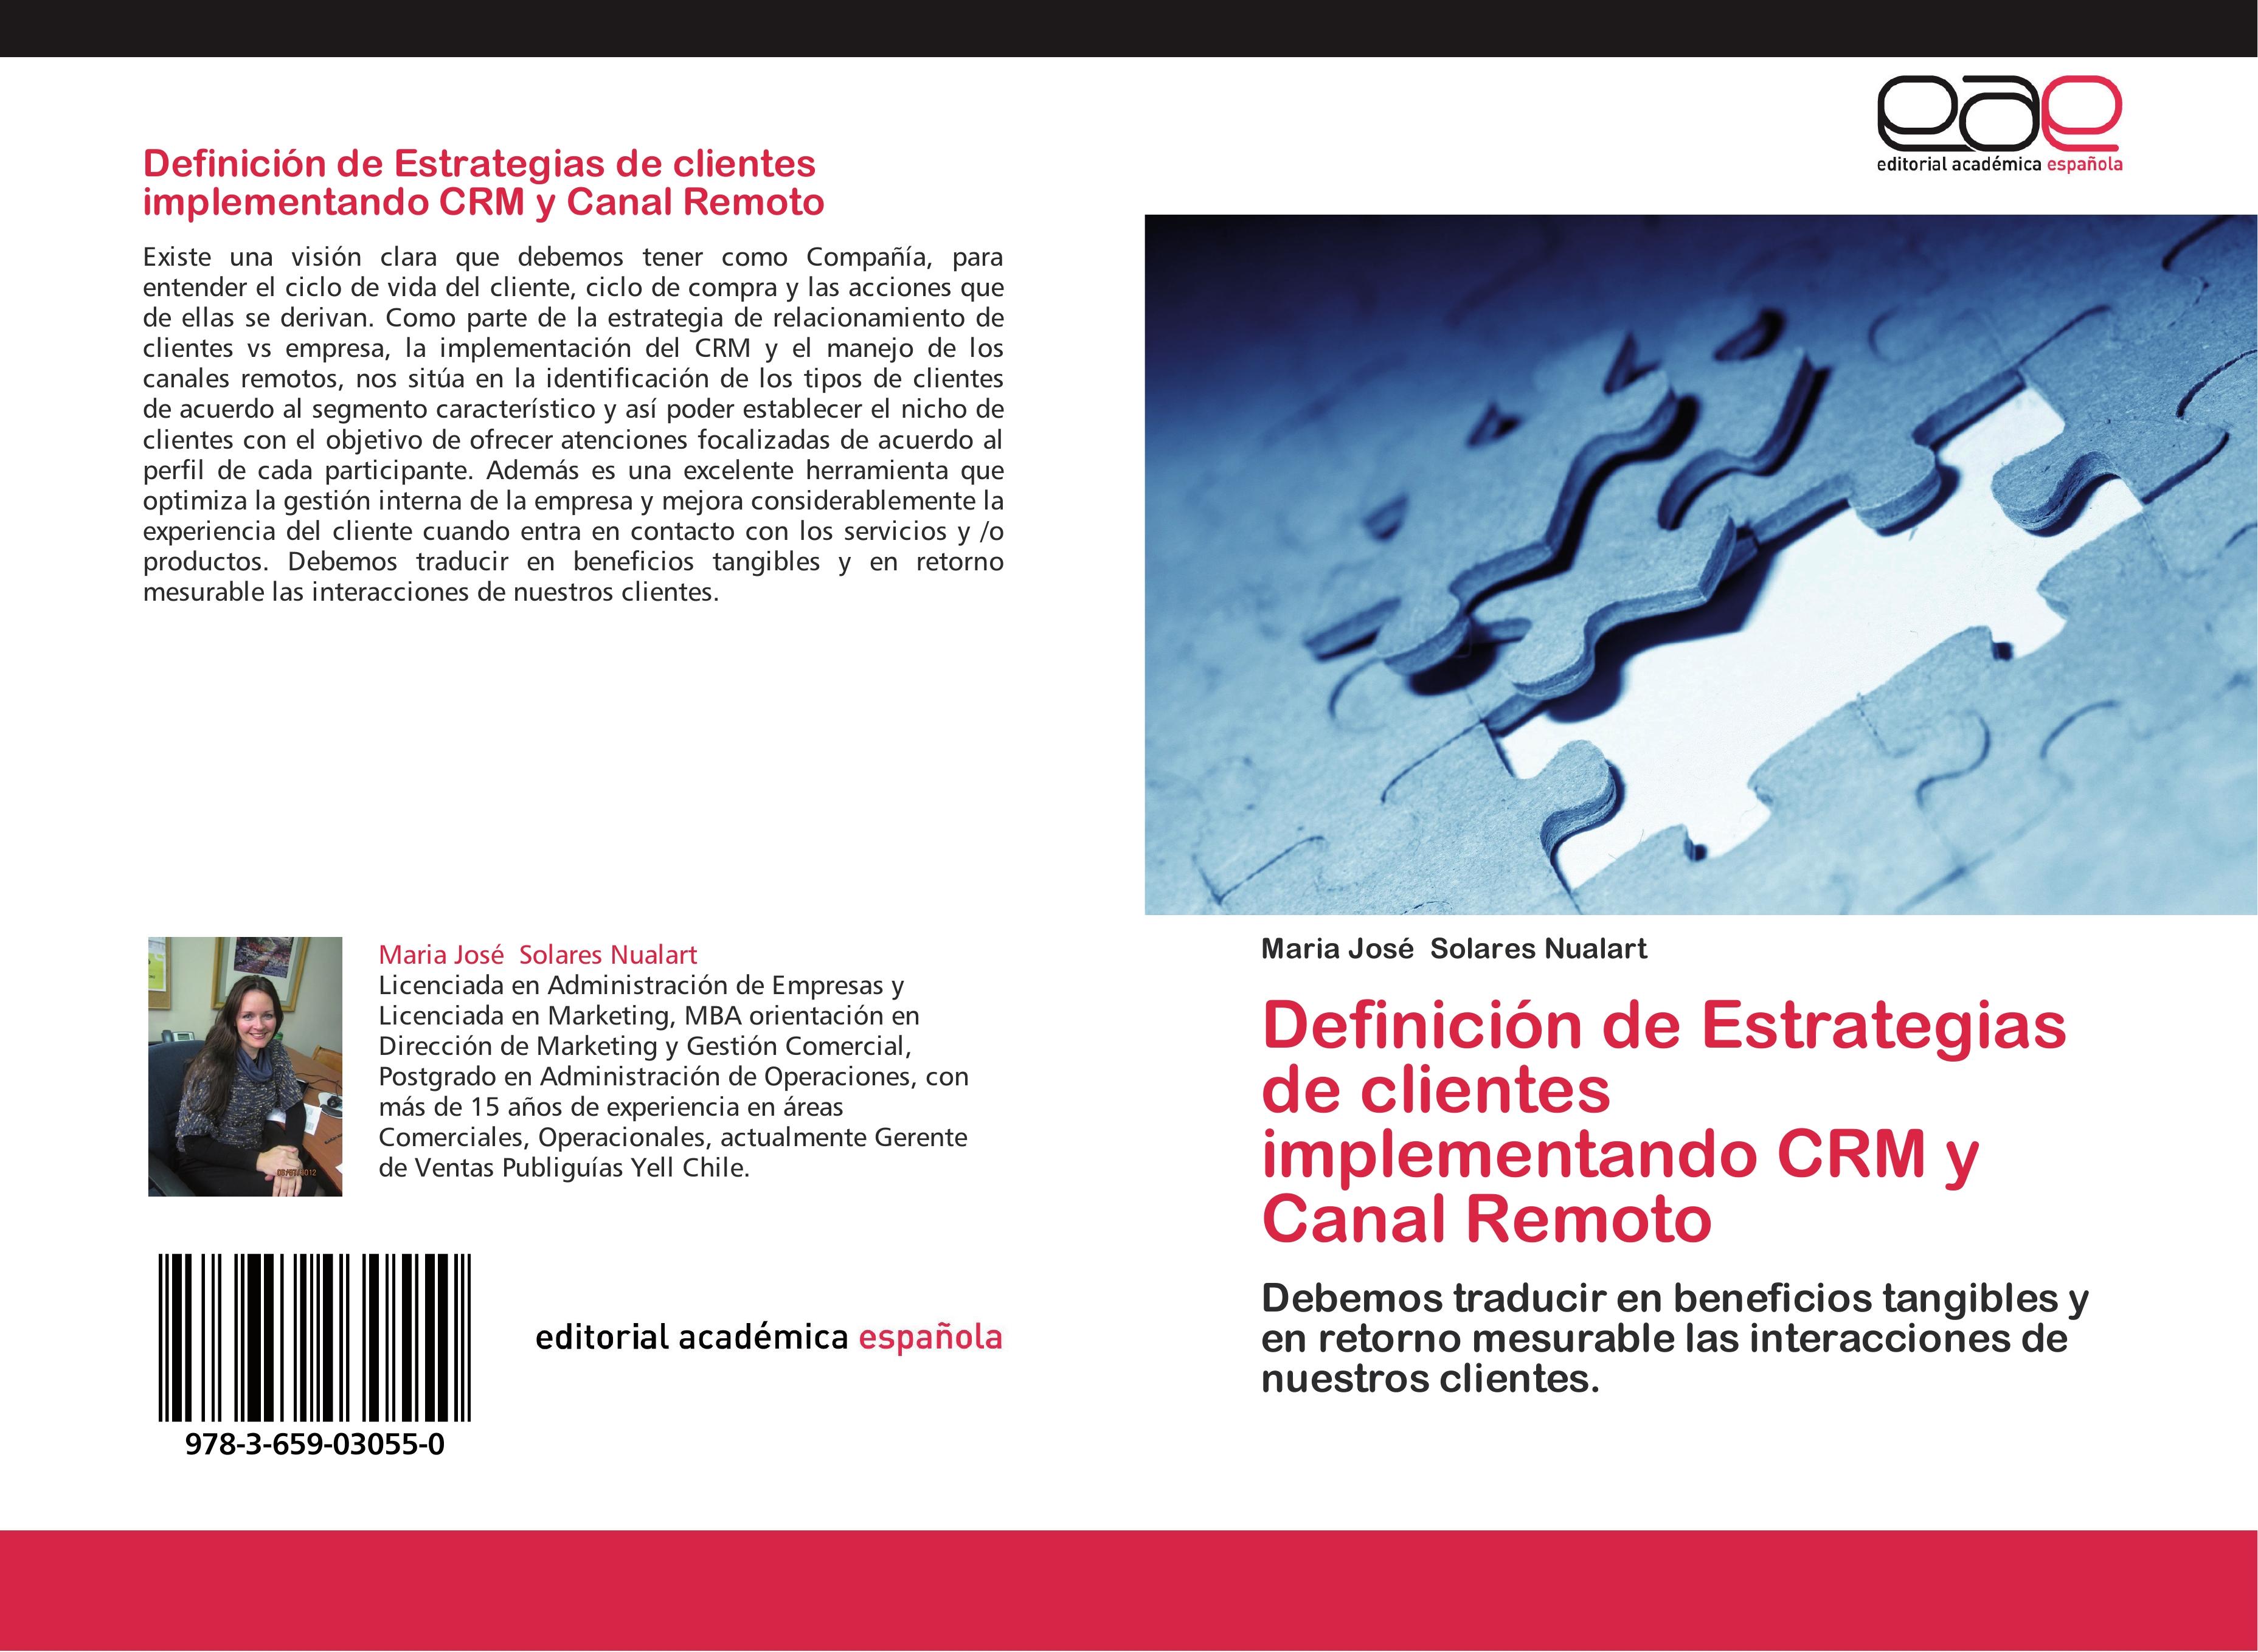 Definición de Estrategias de clientes implementando CRM y Canal Remoto - Maria José Solares Nualart